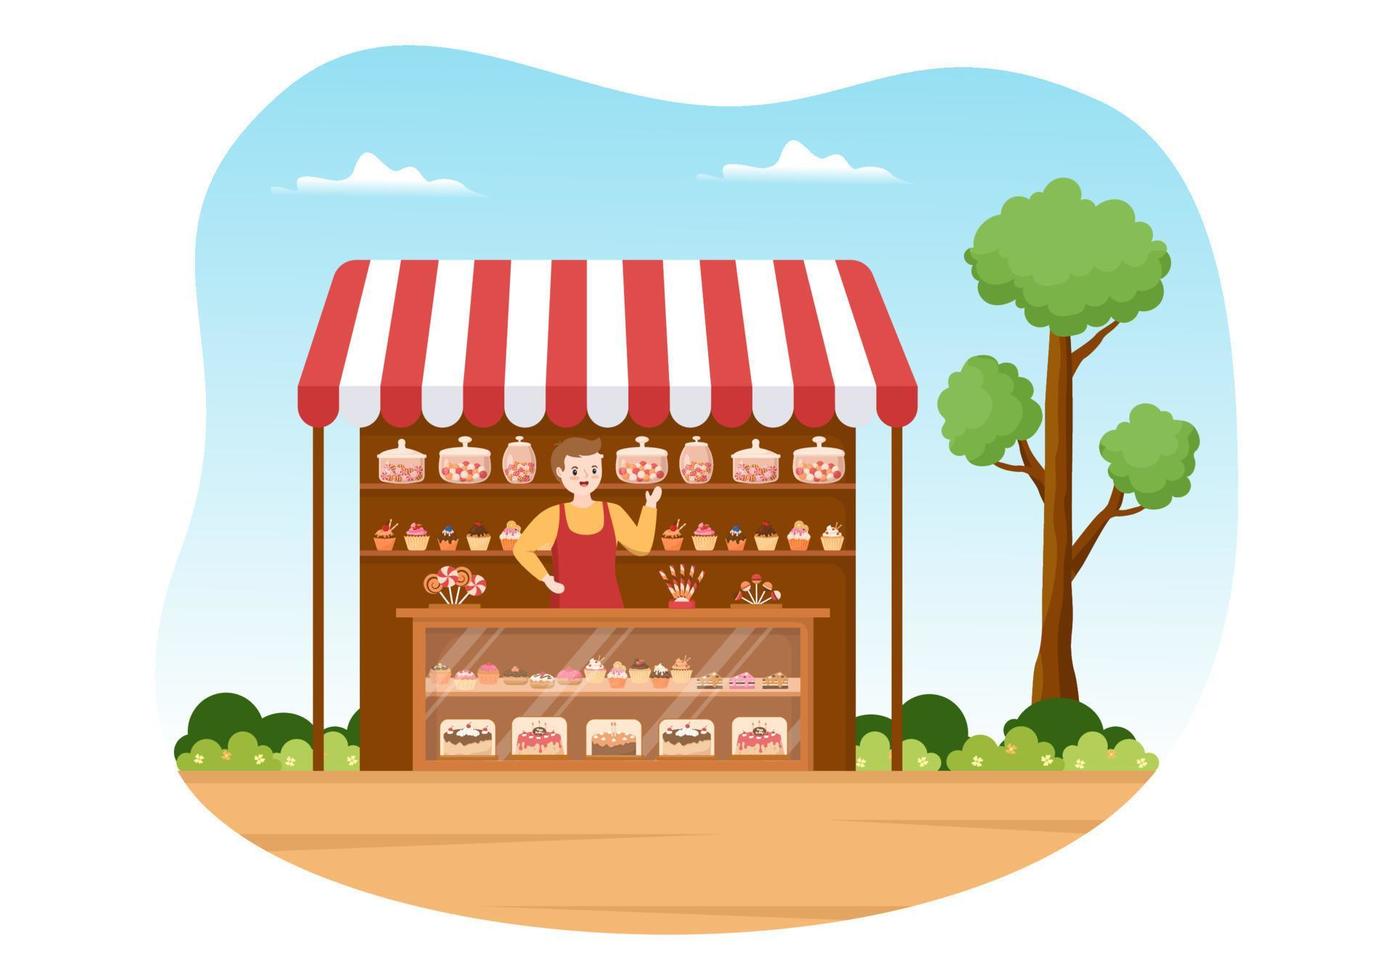 süßwarenladen, der verschiedene backwaren, cupcake, kuchen, gebäck oder süßigkeiten auf flachen handgezeichneten vorlagenillustrationen im cartoon-stil verkauft vektor